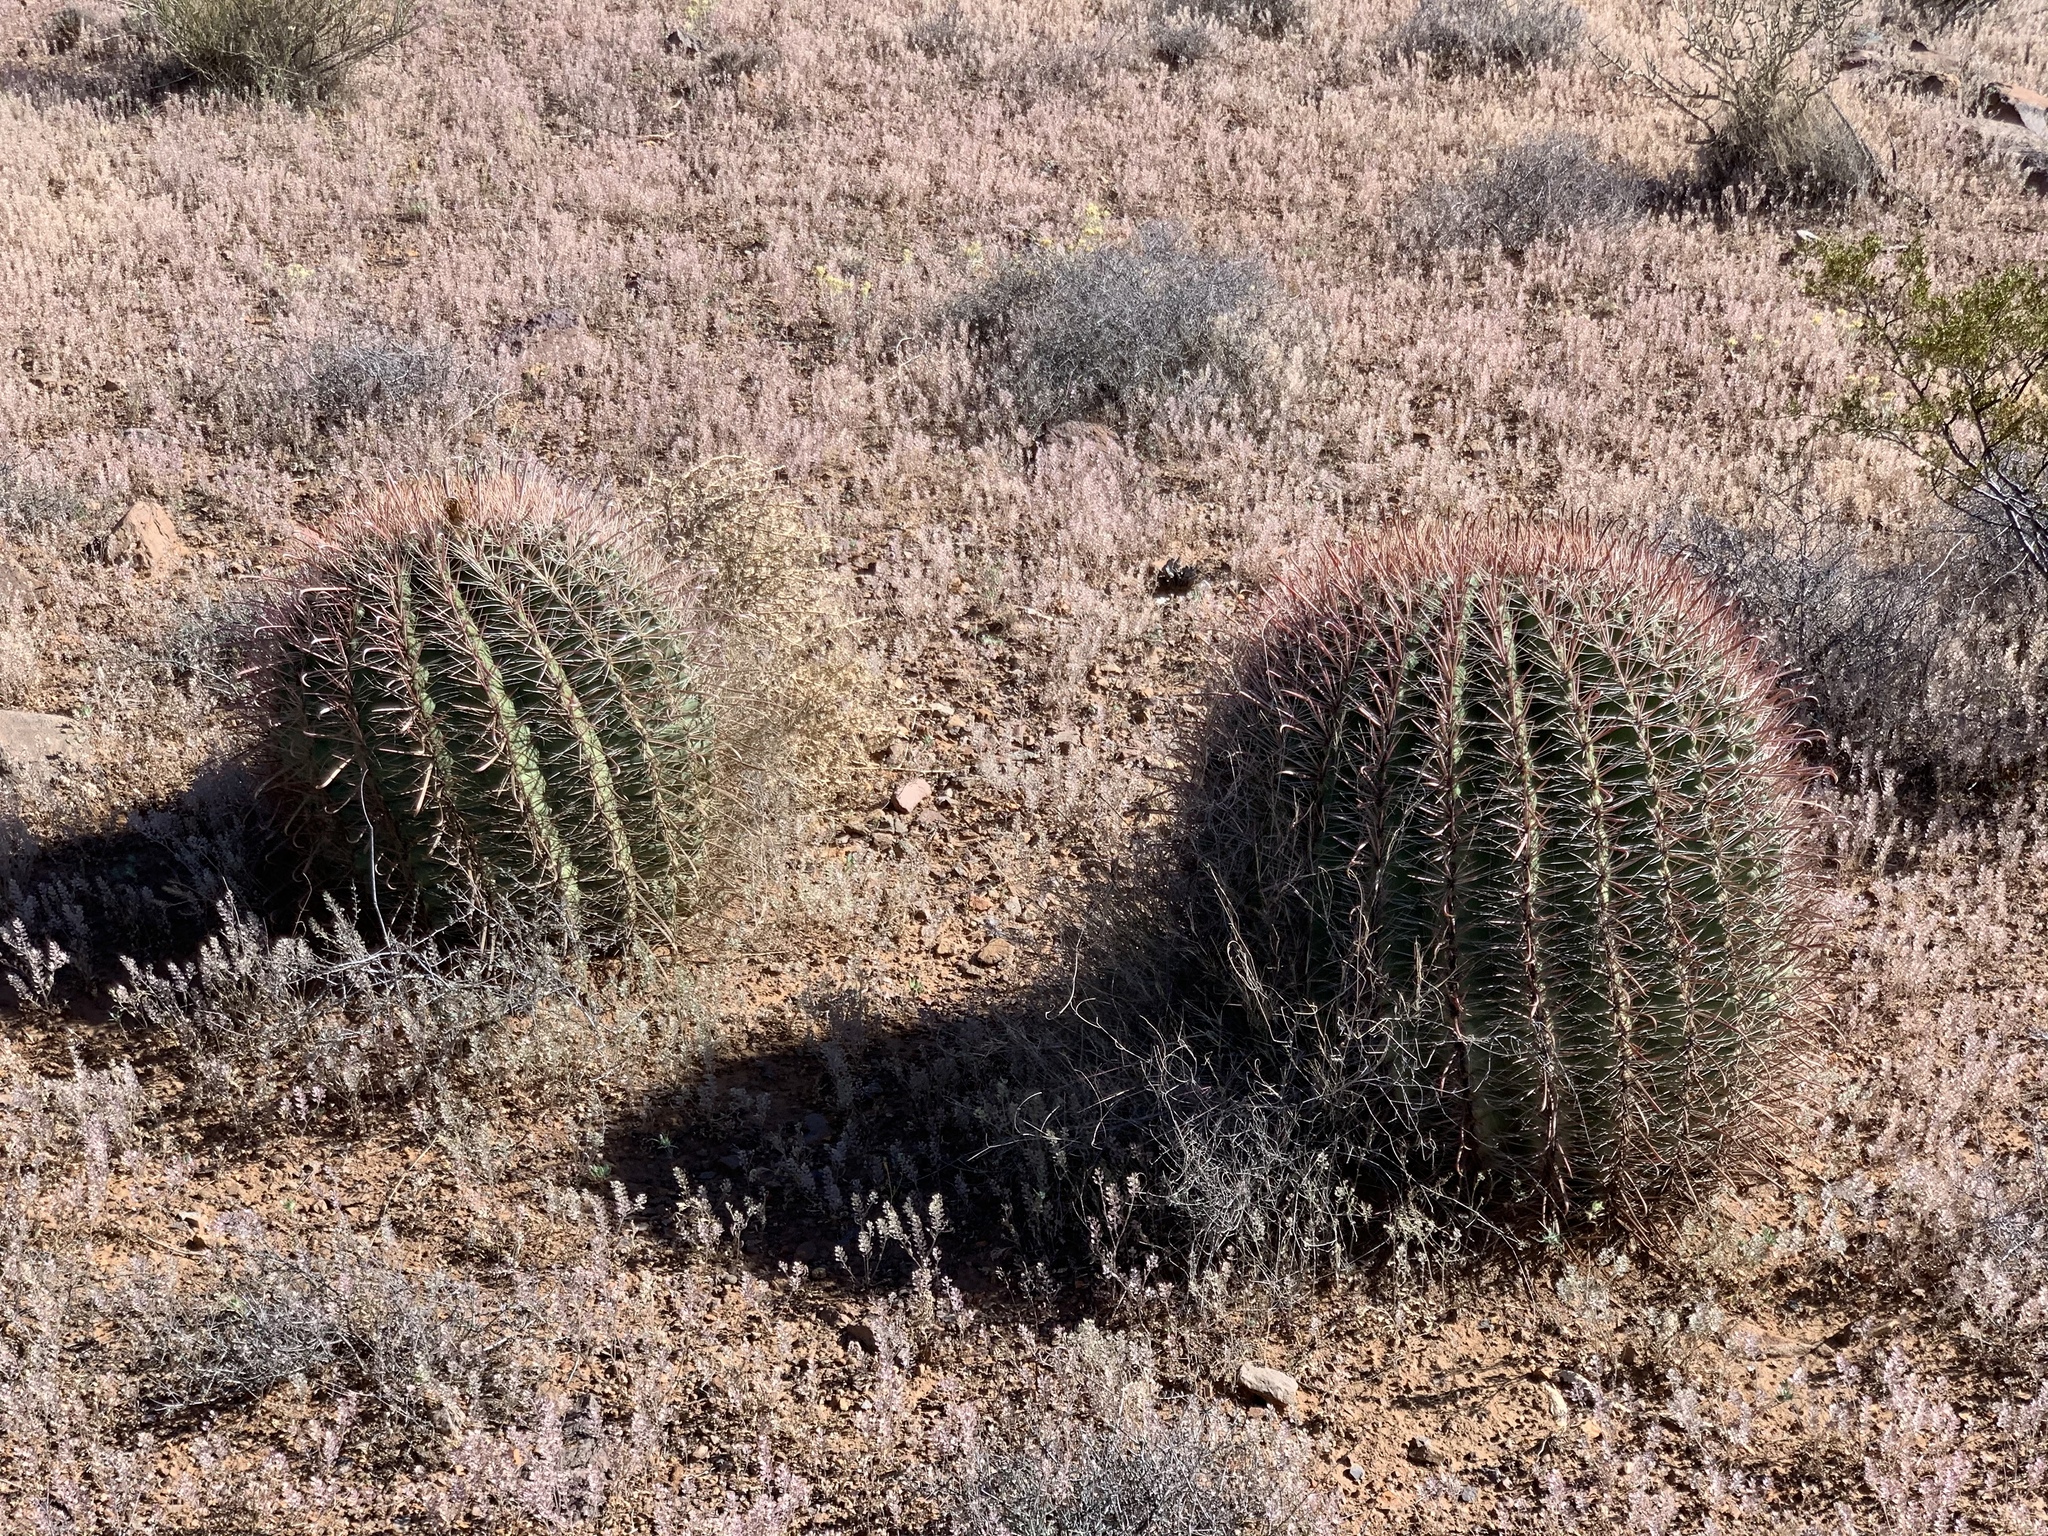 Fishhook barrel cactus (Ferocactus wislizeni) 6 foot & 5 inches